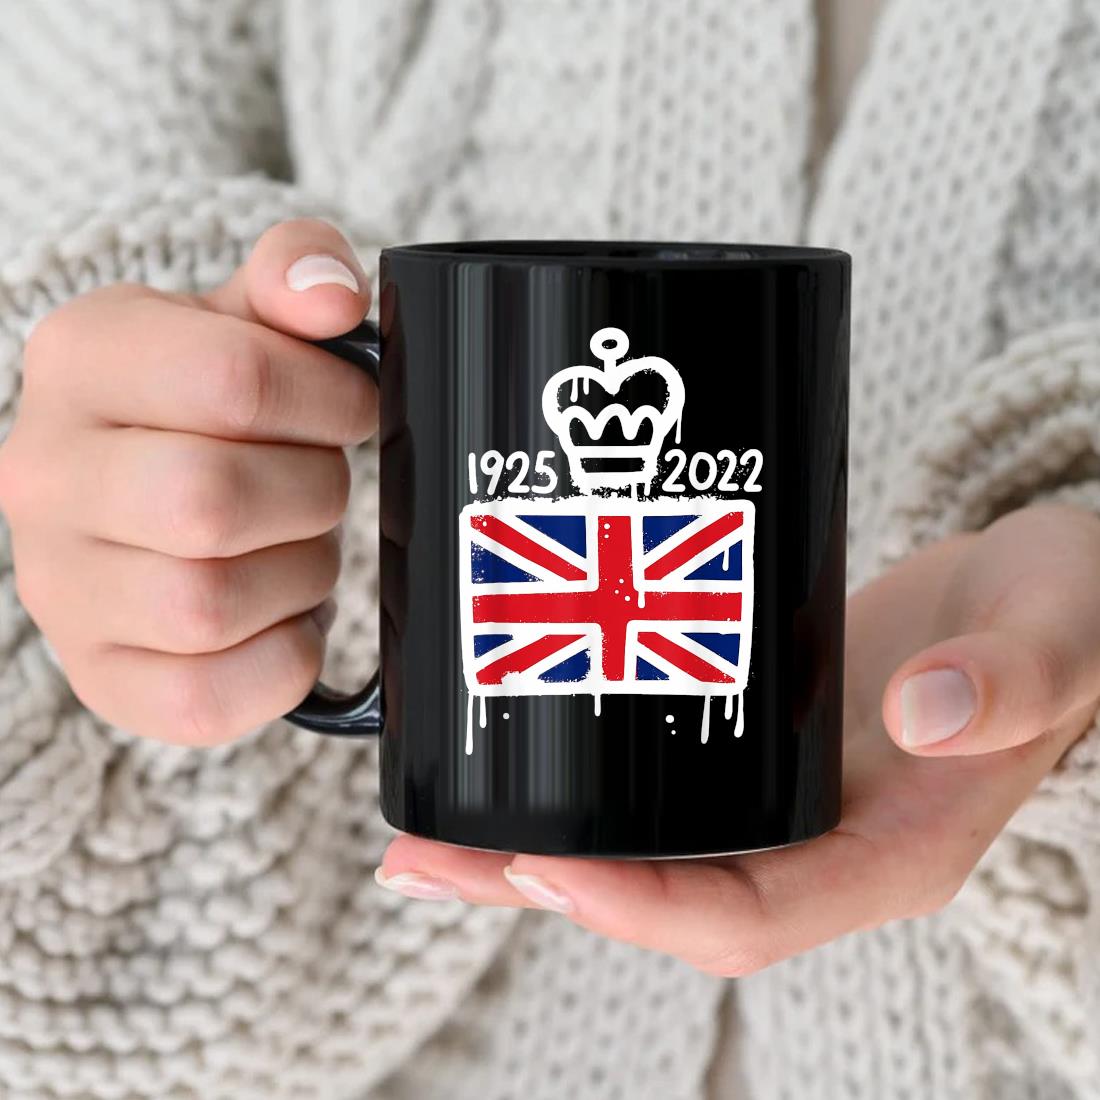 Queen Elizabeth’s Ii British Crown Majesty Queen Elizabeth’s 1926-2022 Mug